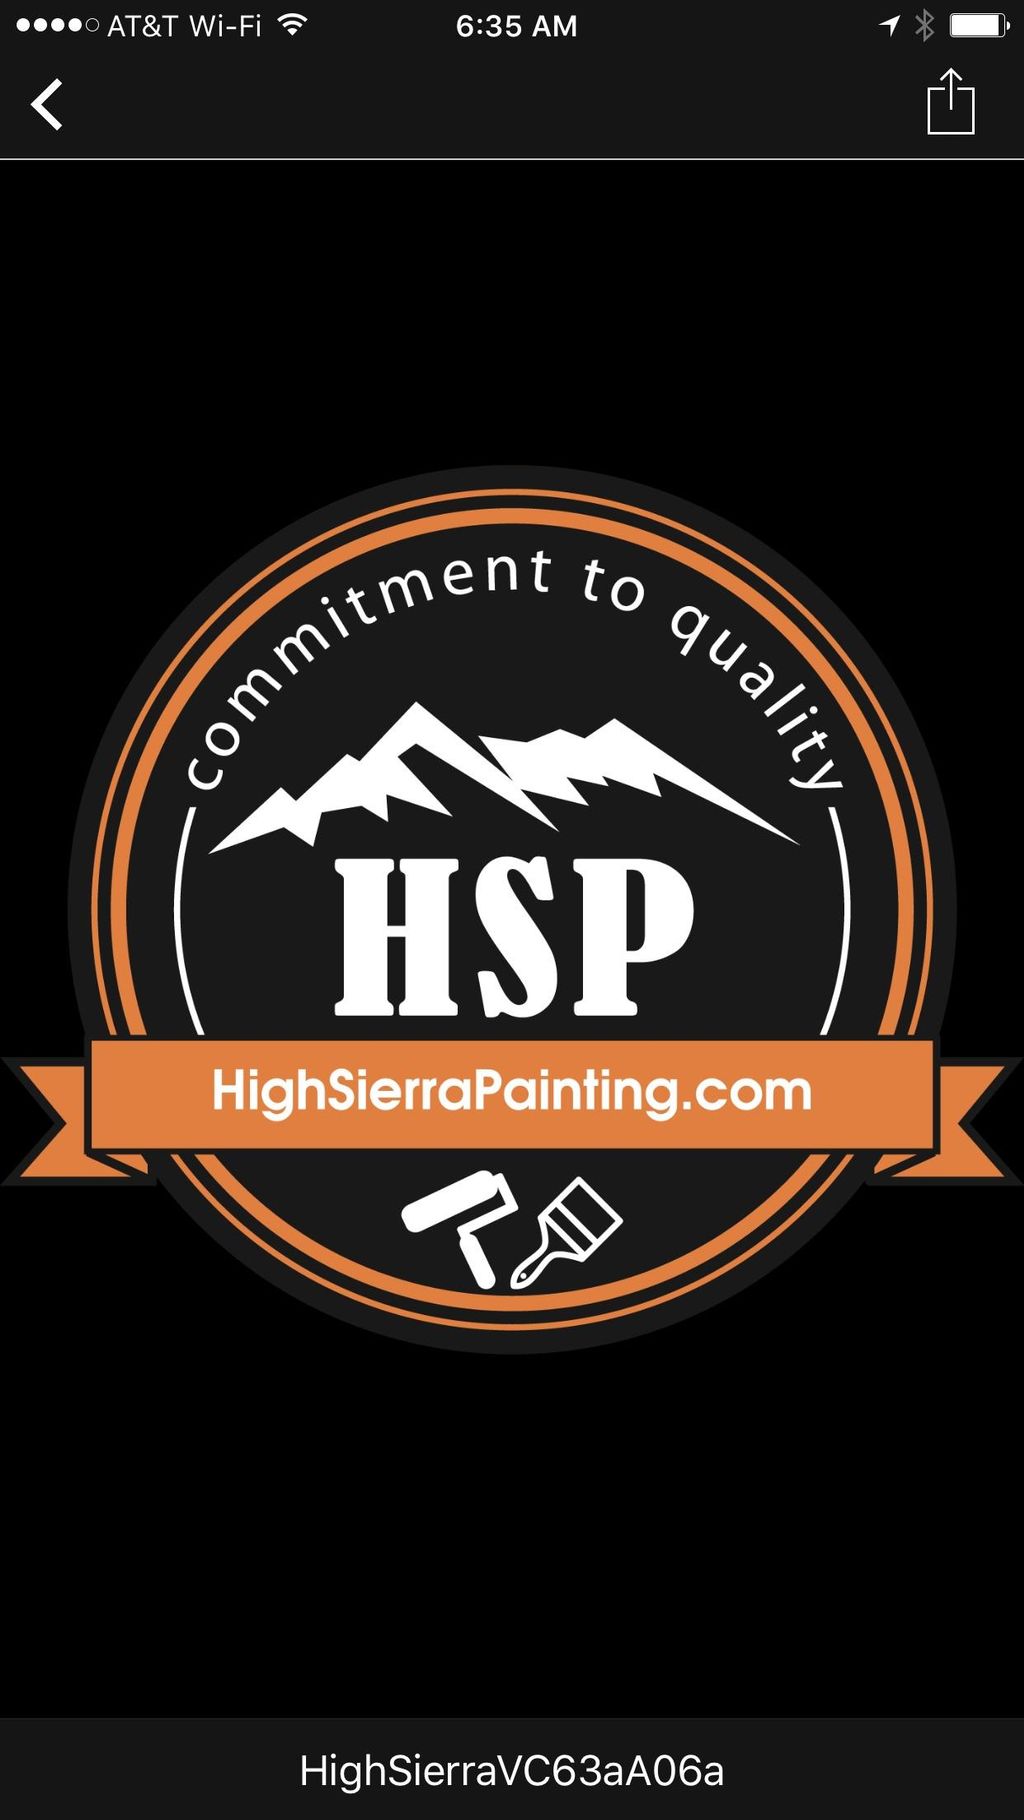 High Sierra Painting